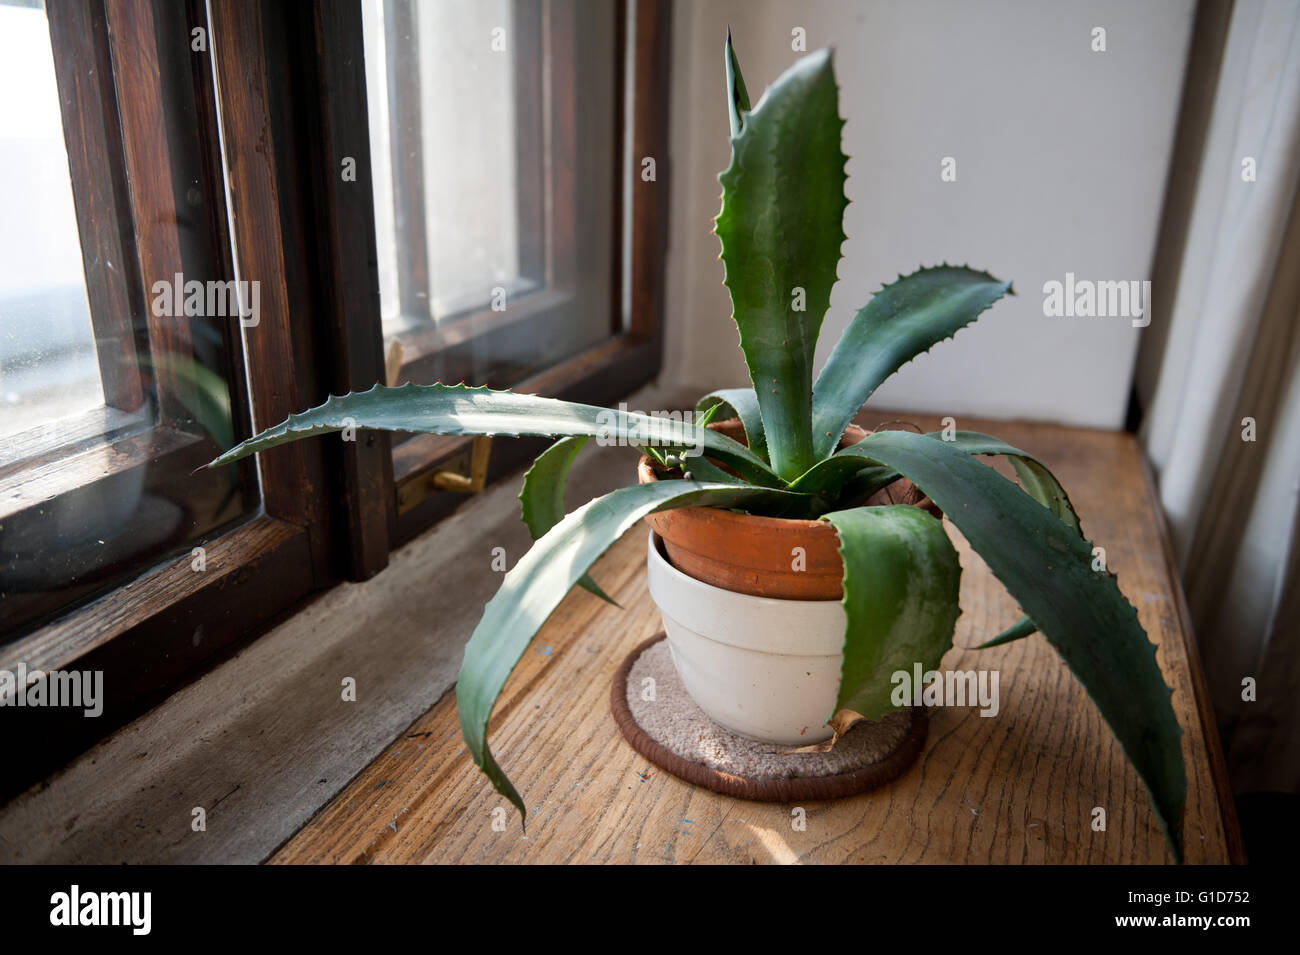 Verde agave piante sul davanzale, succulenti crescendo in interno di una casa in Polonia, fogliame in sun luce dalla finestra in legno. Foto Stock